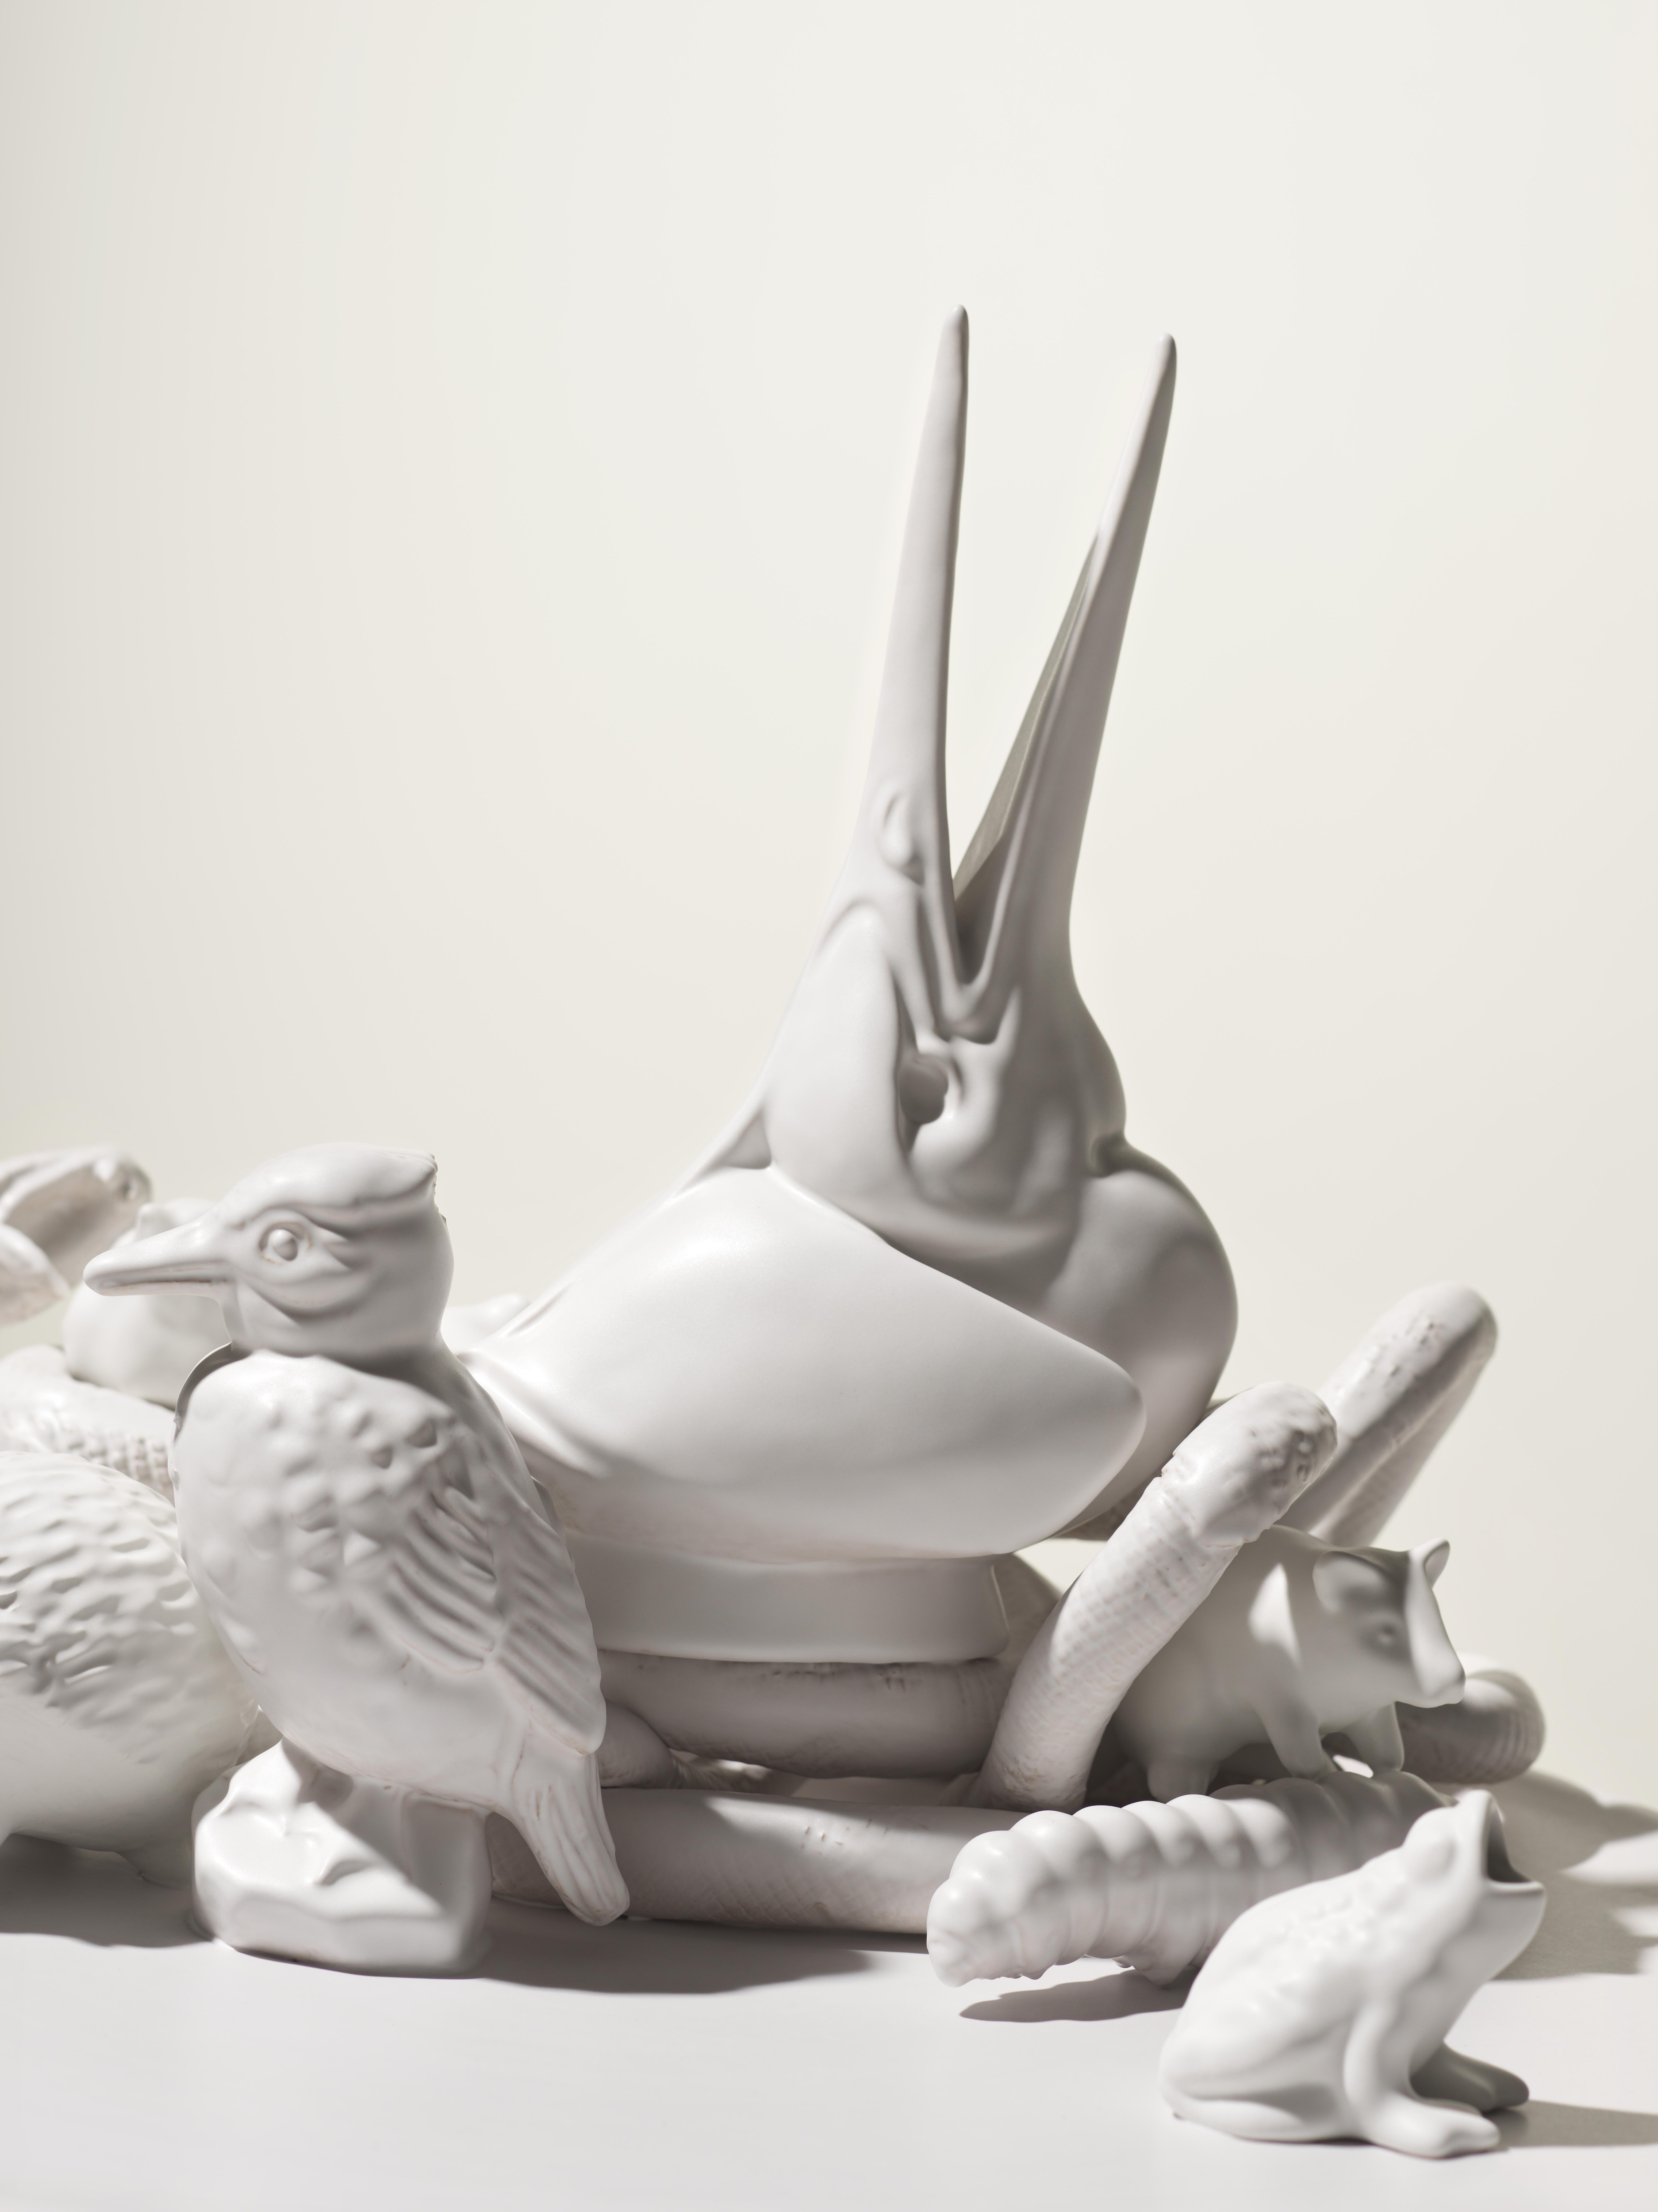 sculpture de martin-pêcheur blanc du 21e siècle, réalisée par Ceramica Gatti, Italie. Pièce unique fabriquée en Italie, cette pièce de poterie a été conçue par Andrea Anastasio dans l'historique Bottega Ceramica Gatti 1928 à Faenza, spécialisée dans